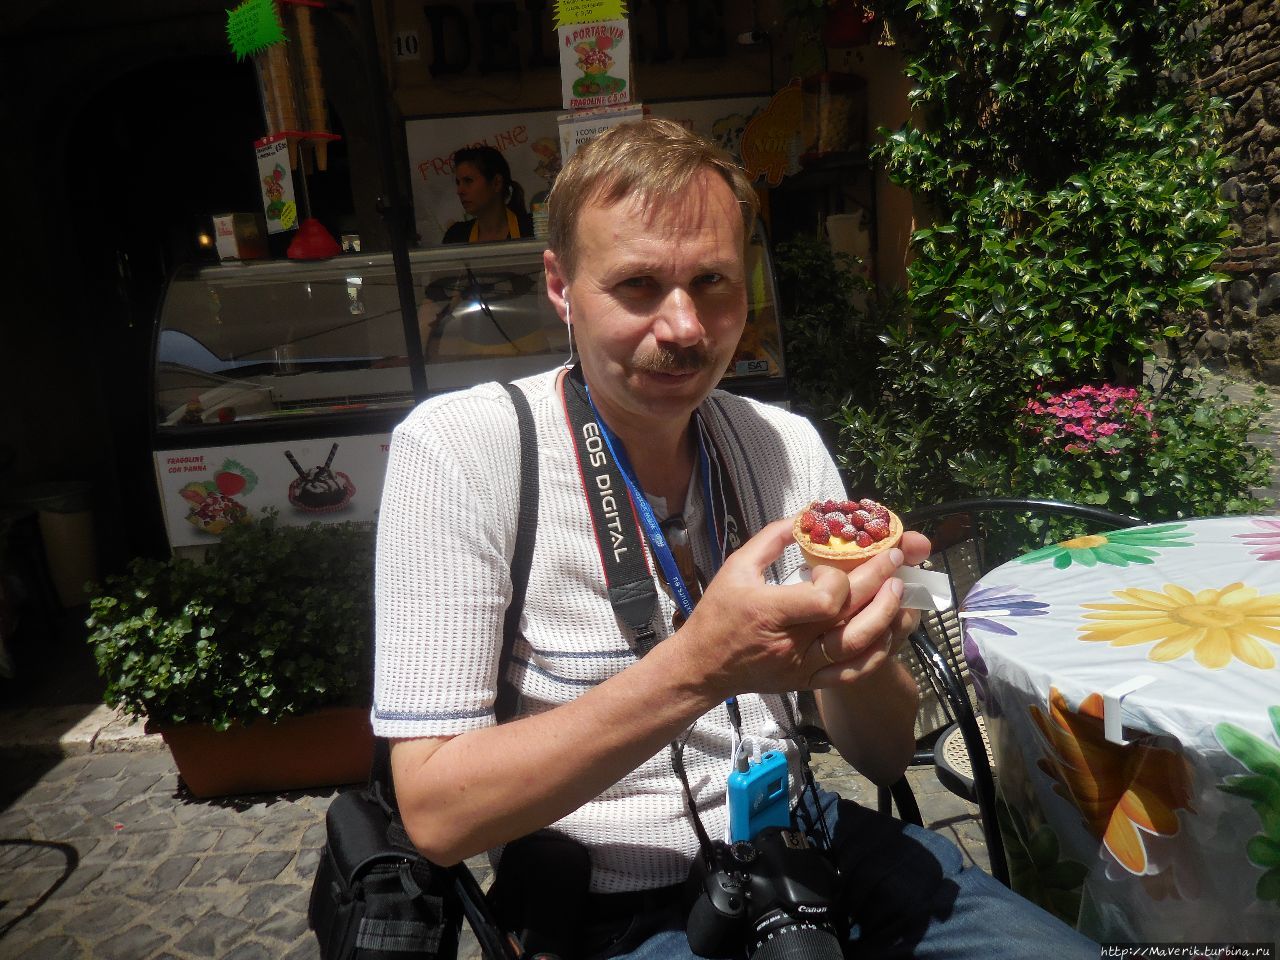 Неми — городок со вкусом клубники Неми, Италия